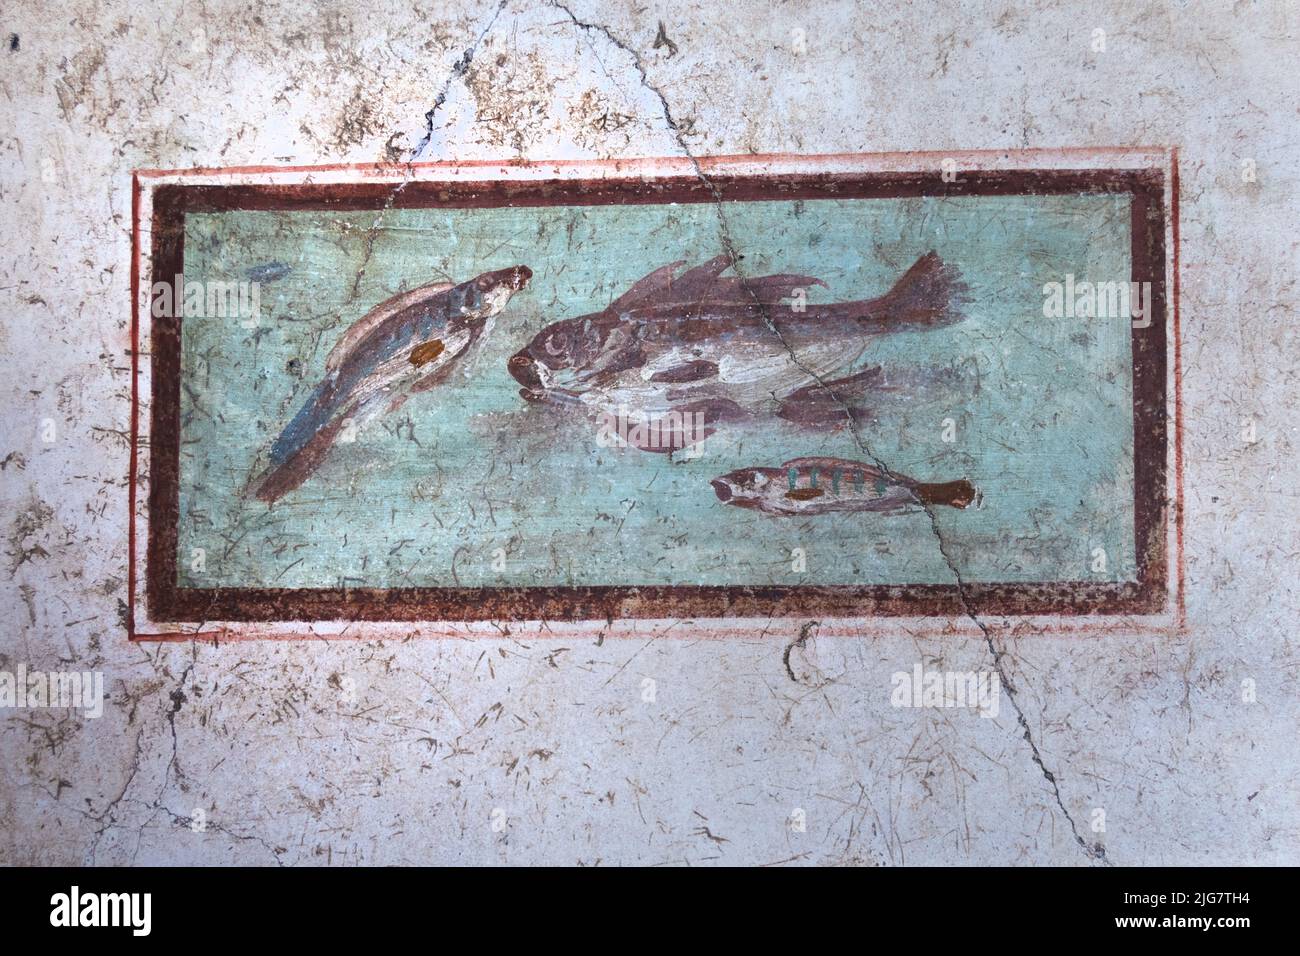 Antiguos frescos en Pompeya, la antigua ciudad romana destruida en el año 79 d.C. por la erupción del Monte Vesubio. Patrimonio de la Humanidad de la UNESCO. Nápoles, Italia Foto de stock